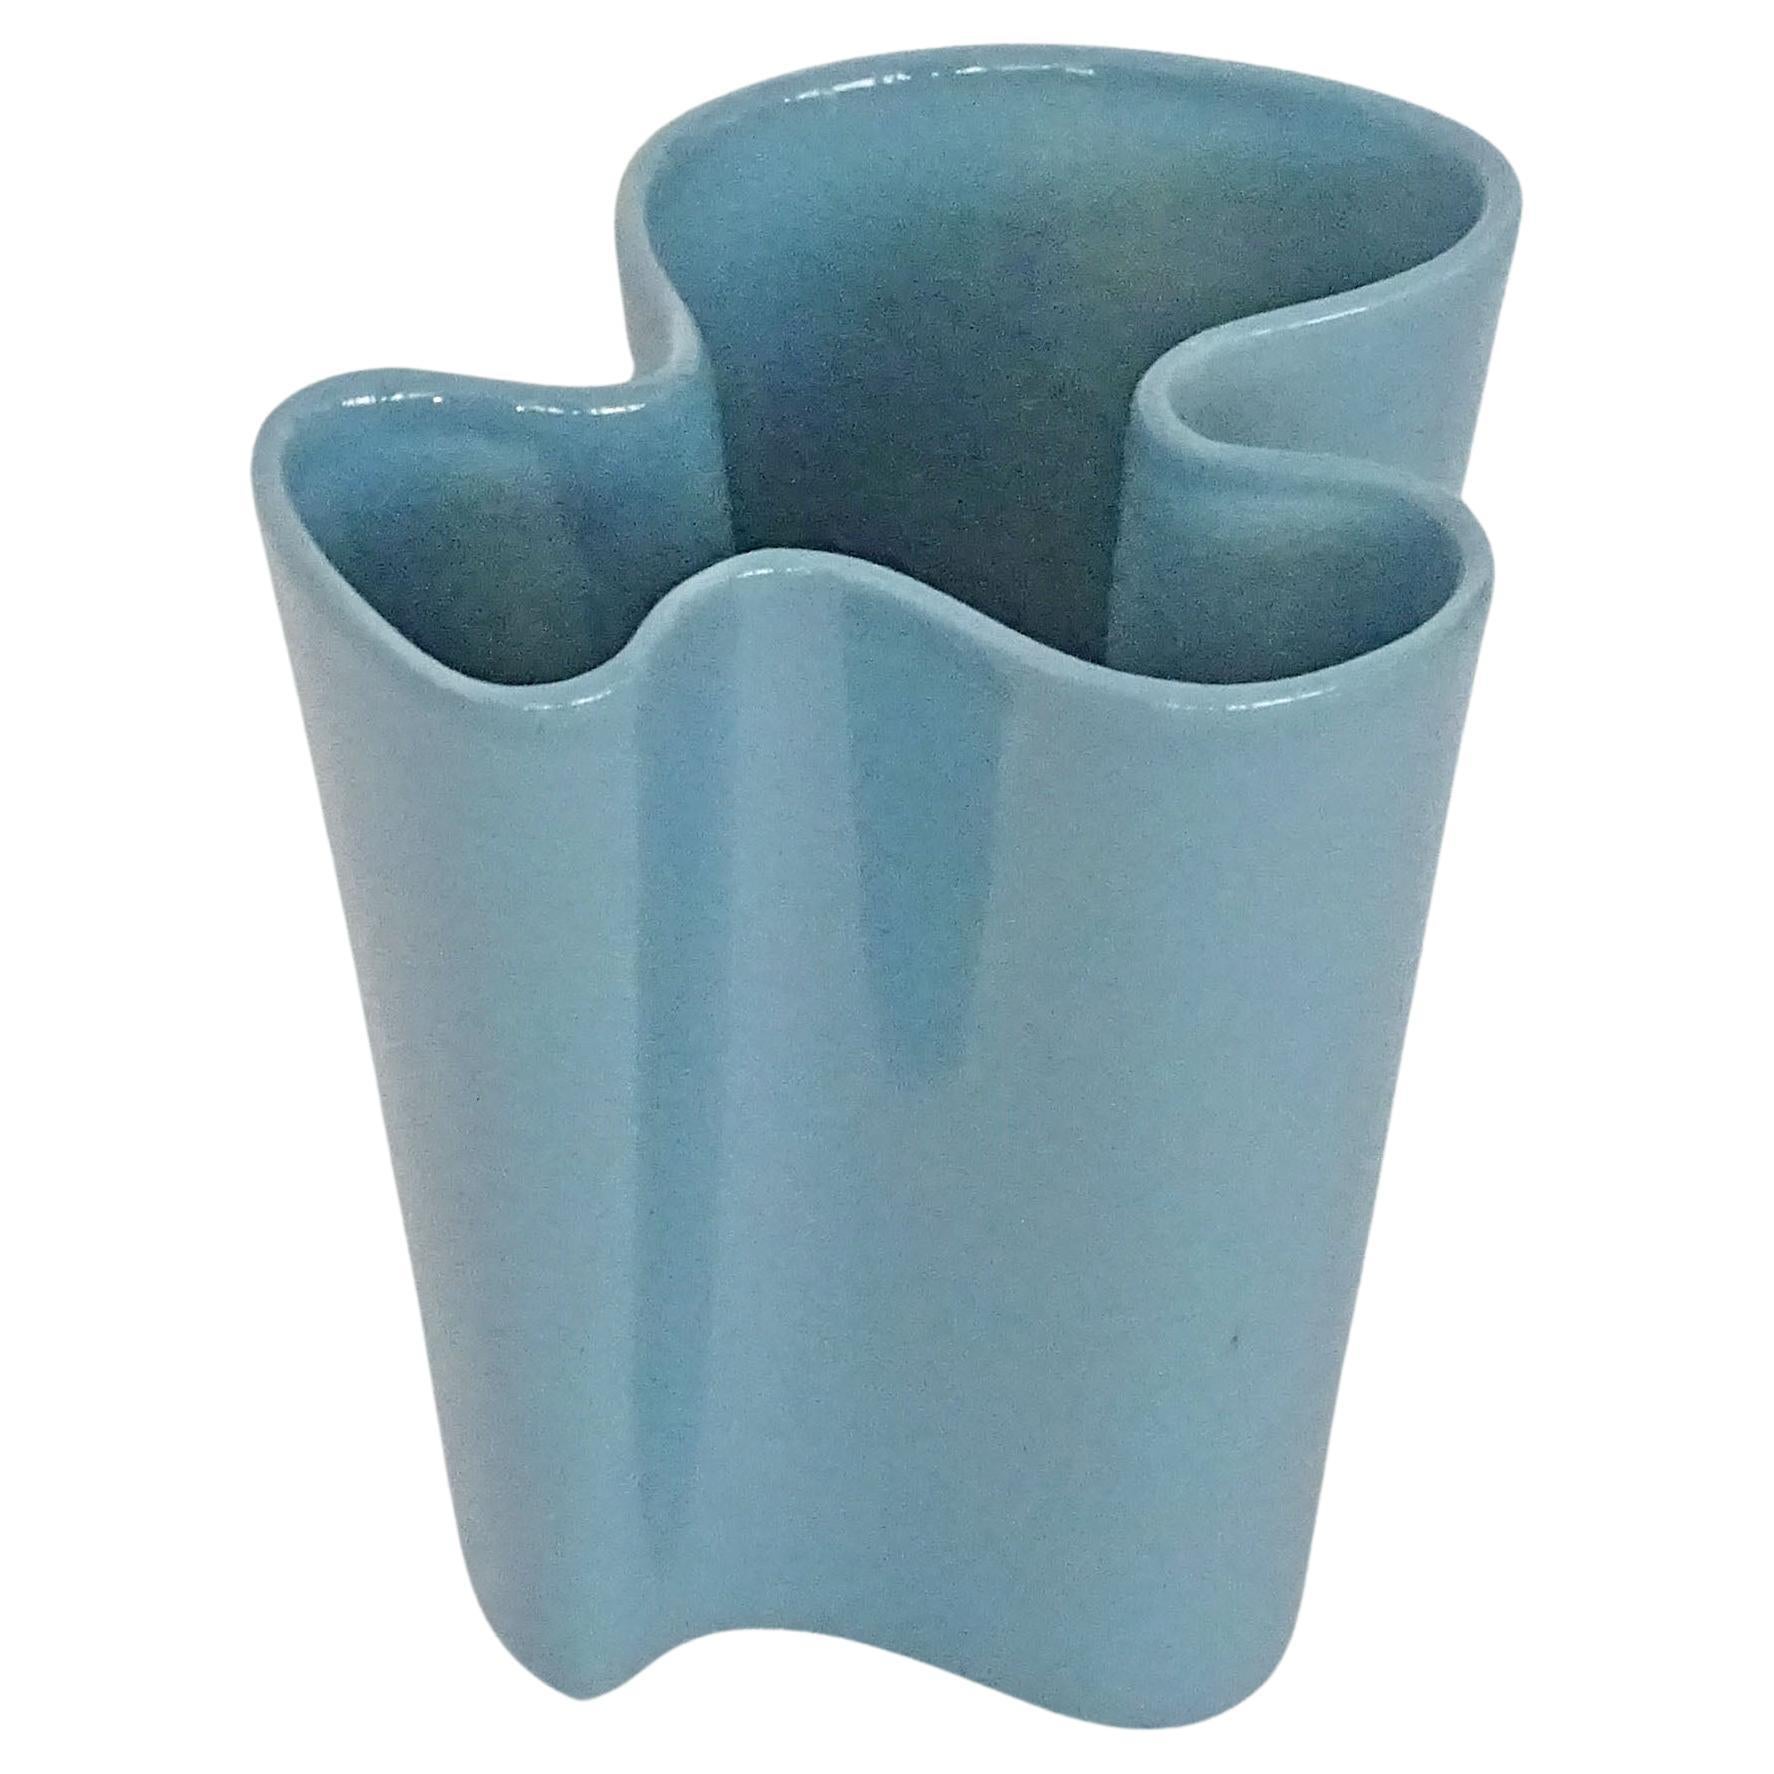 Italian 1950s Biomorphic petrol blue Ceramic vase For Sale